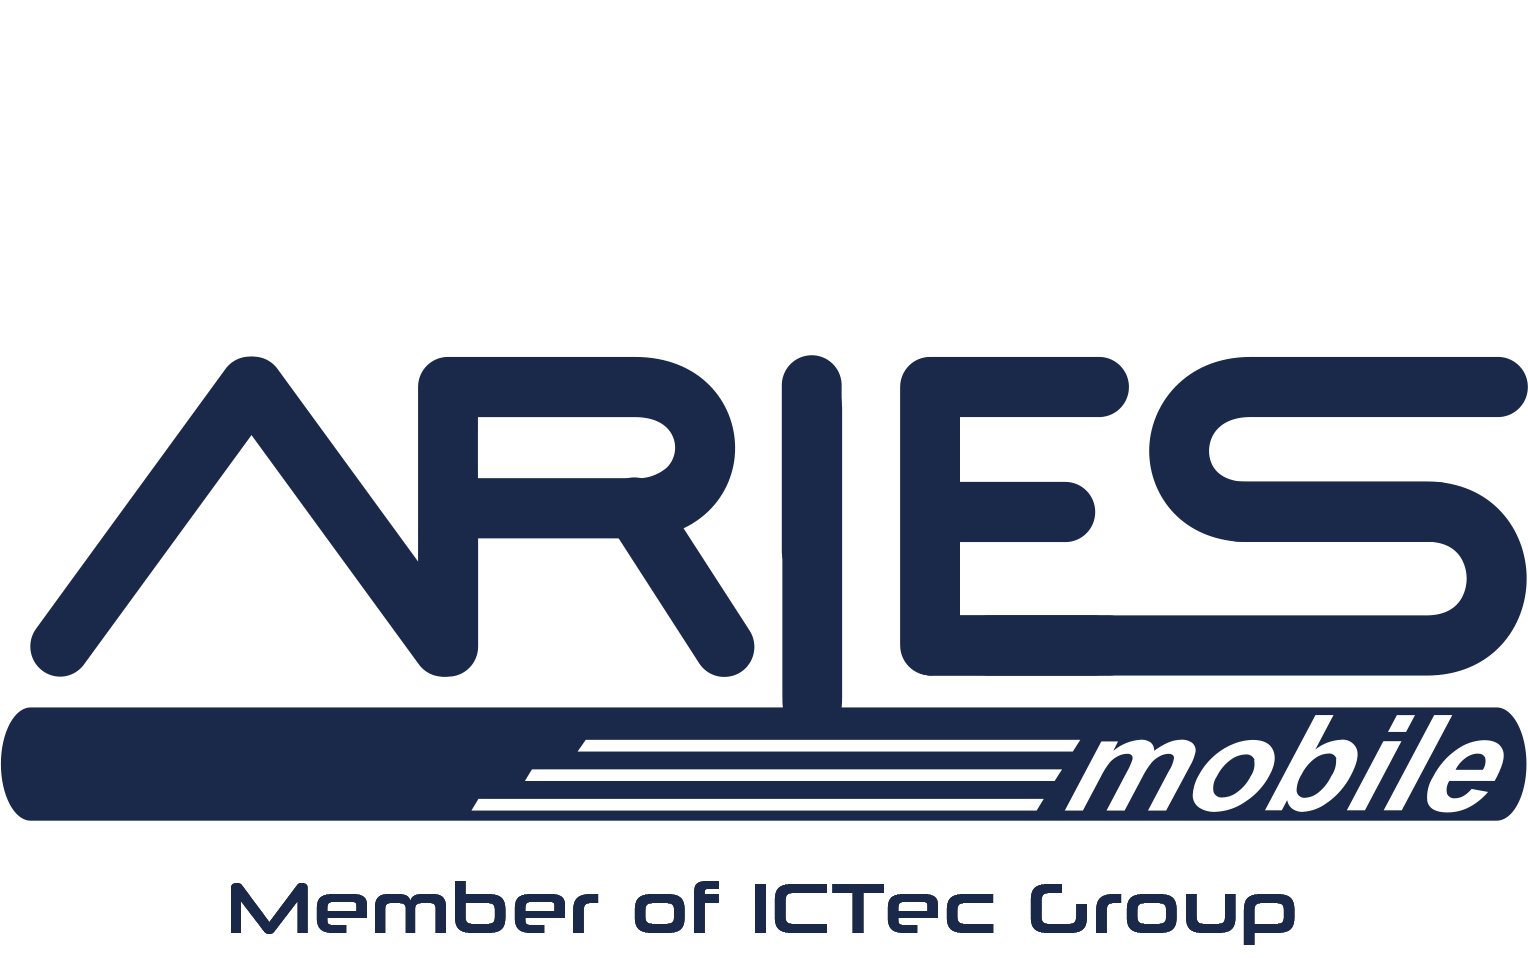 aries_1ctec-member_logo_v03